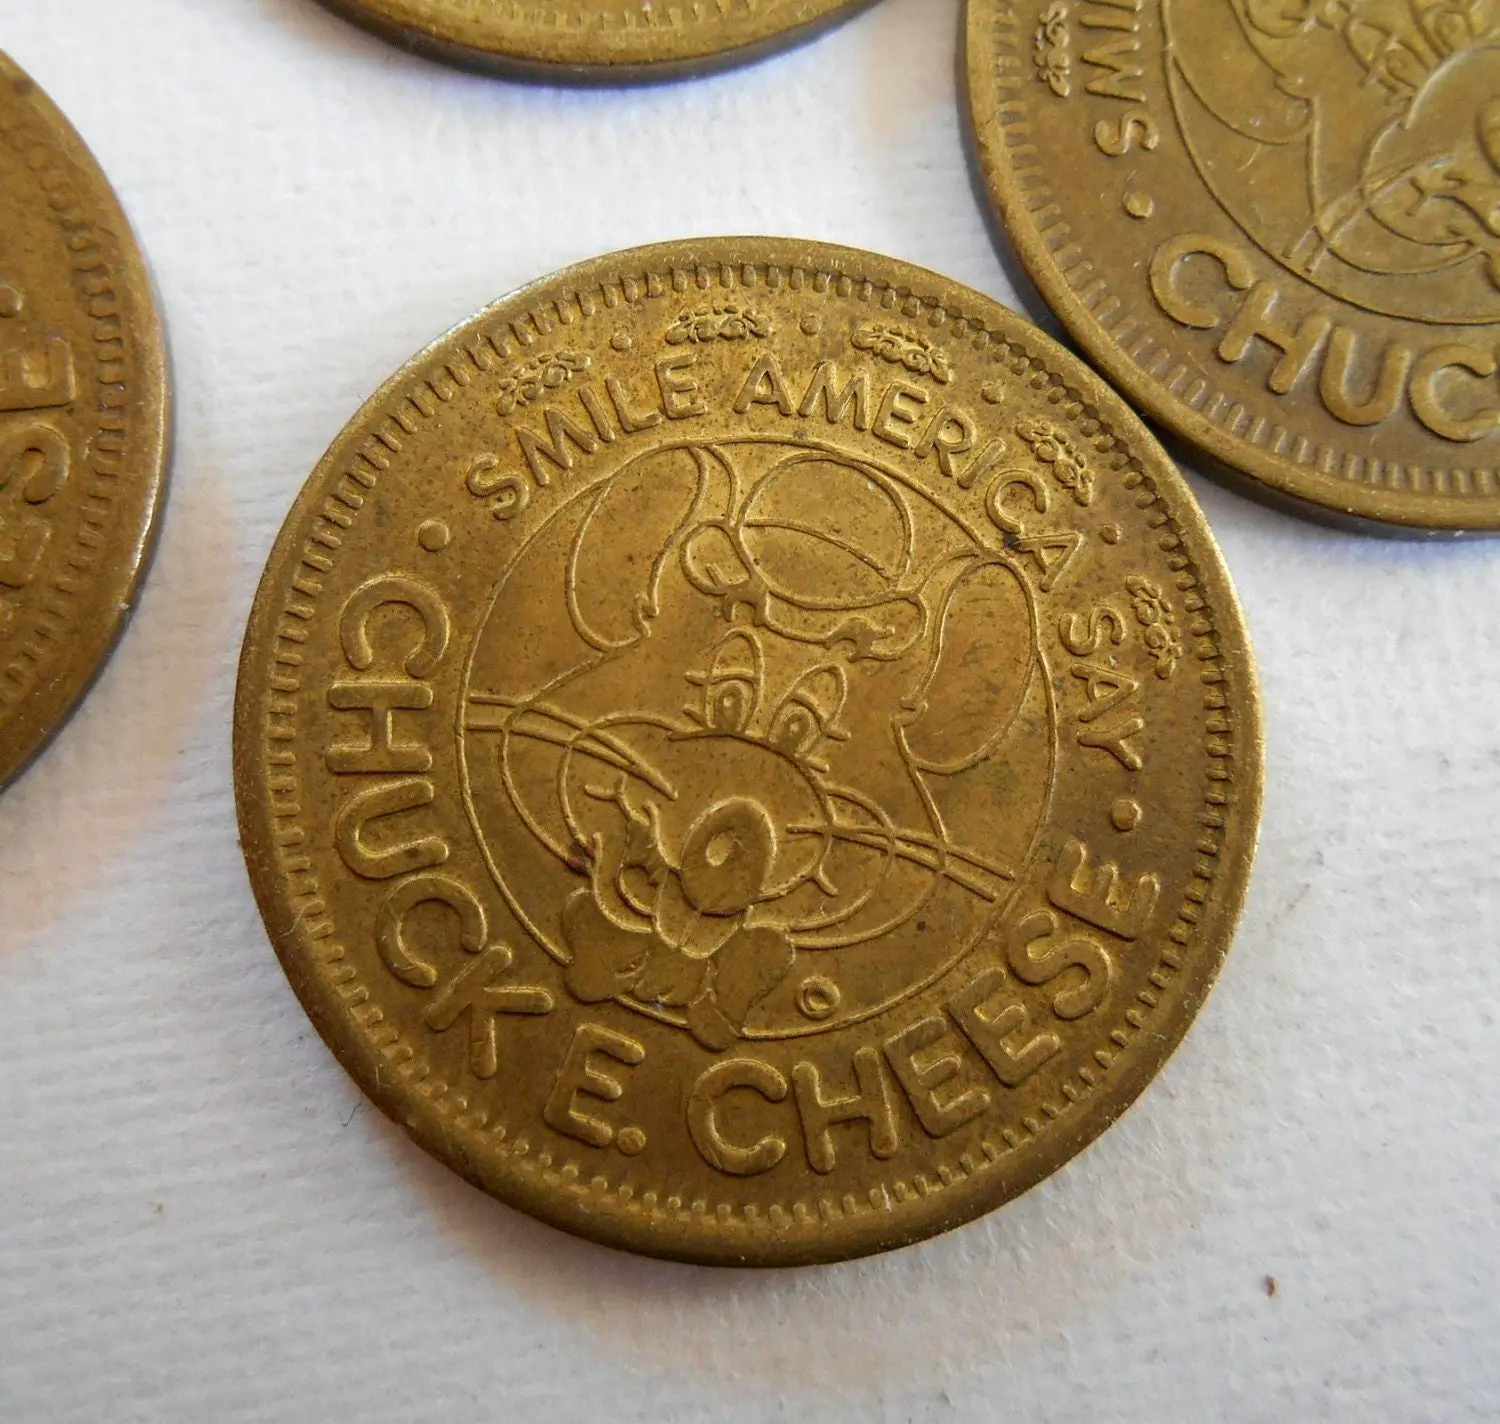 7 Chuck E Cheese Token Coins 25 Cent Restaurant tokens In